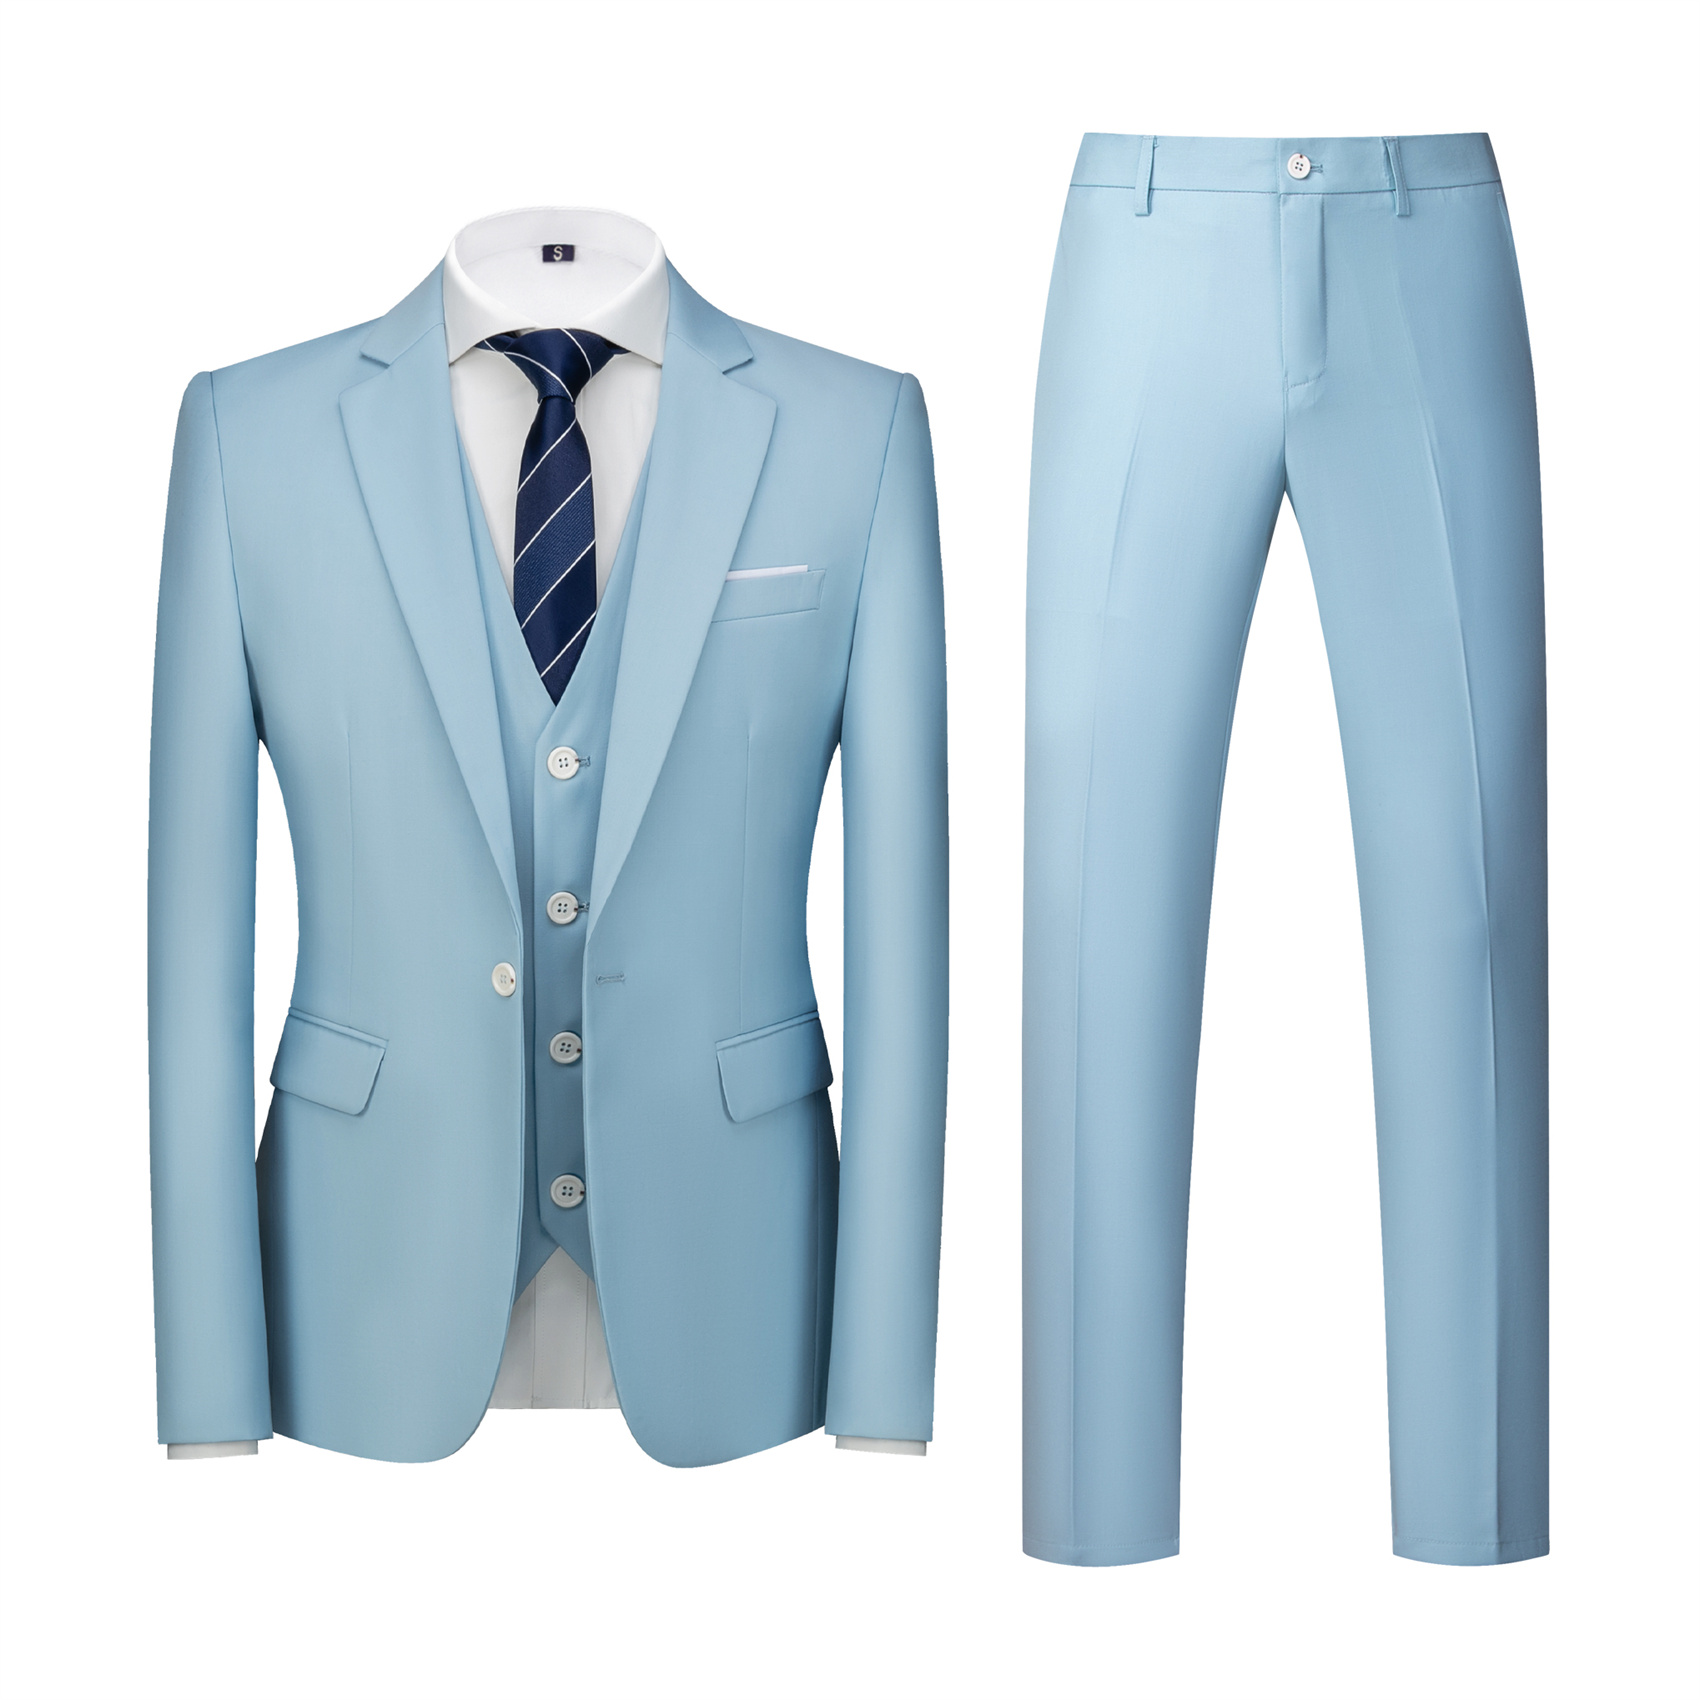 3 Piece Light Blue Suit for Men, Slim Fit (1 Button)